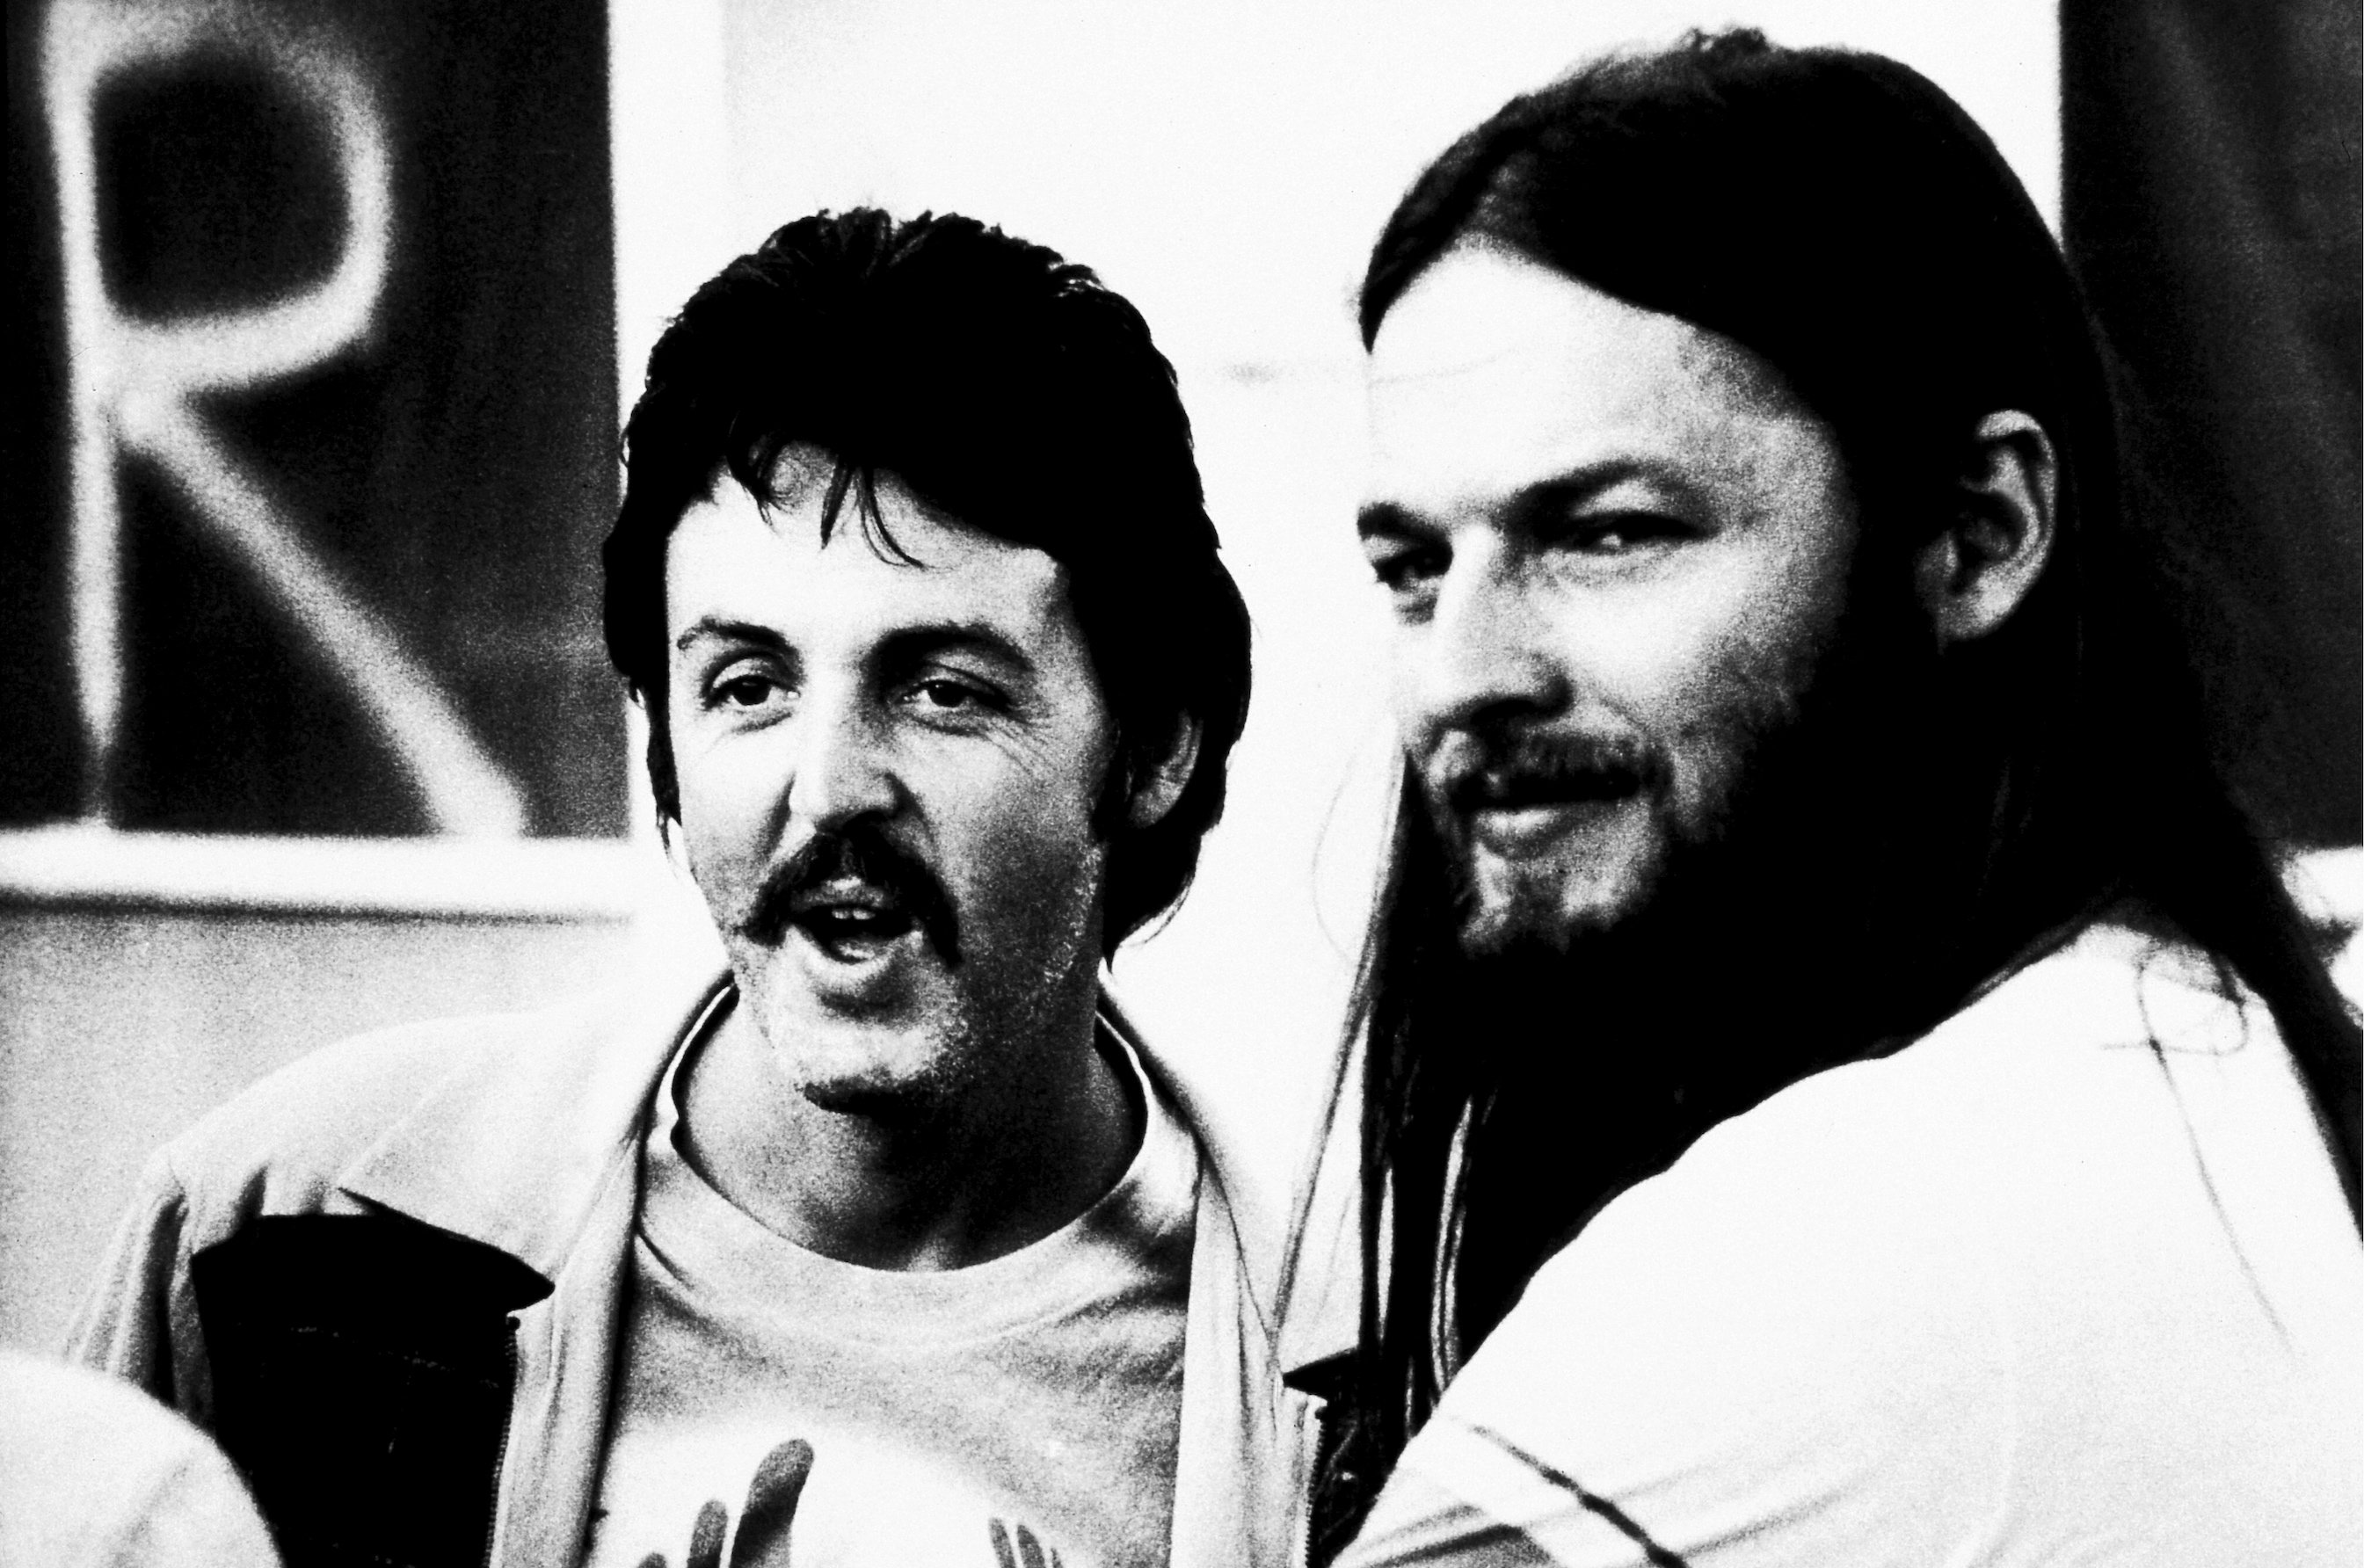 Paul McCartney estuvo a punto de aparecer como invitado en 'The Dark Side of the Moon' de Pink Floyd